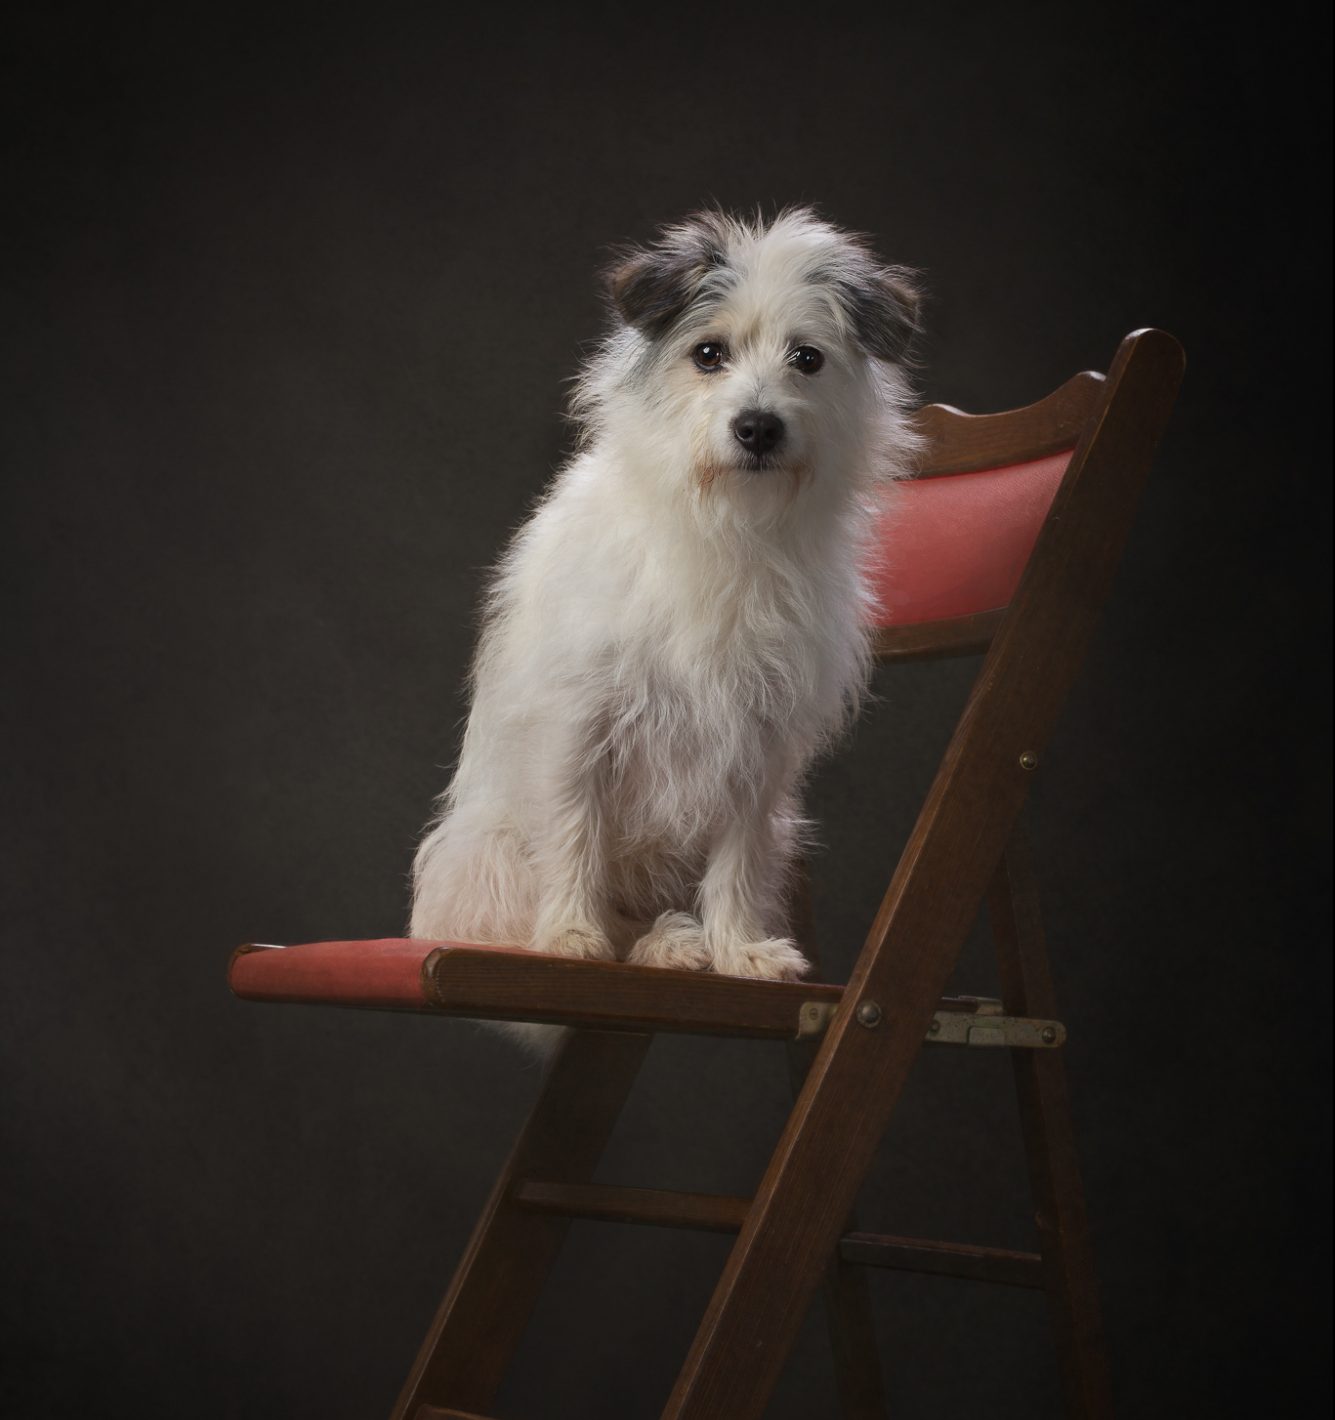 hondenfotografie in studio op rode stoel